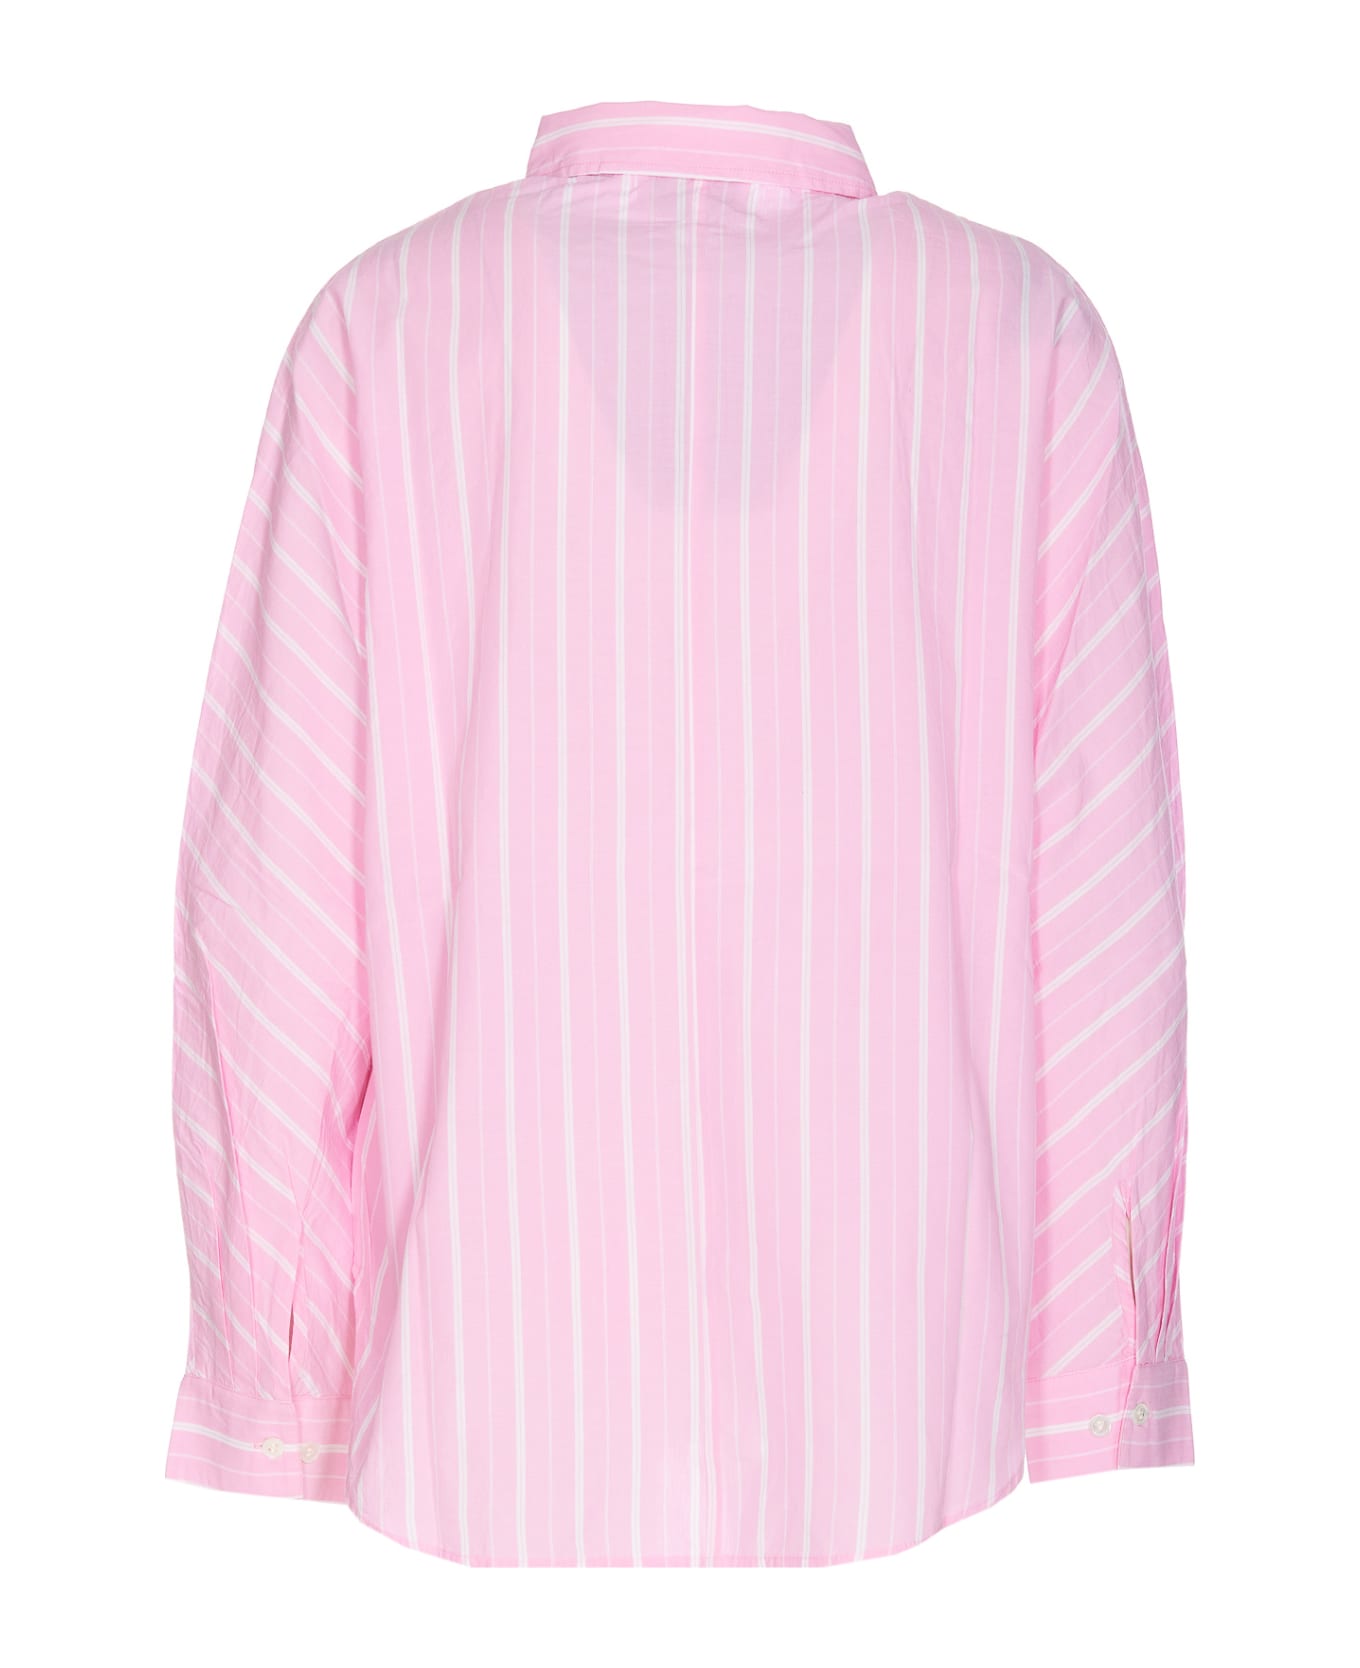 Essentiel Antwerp Fresh Shirt - Rosa シャツ